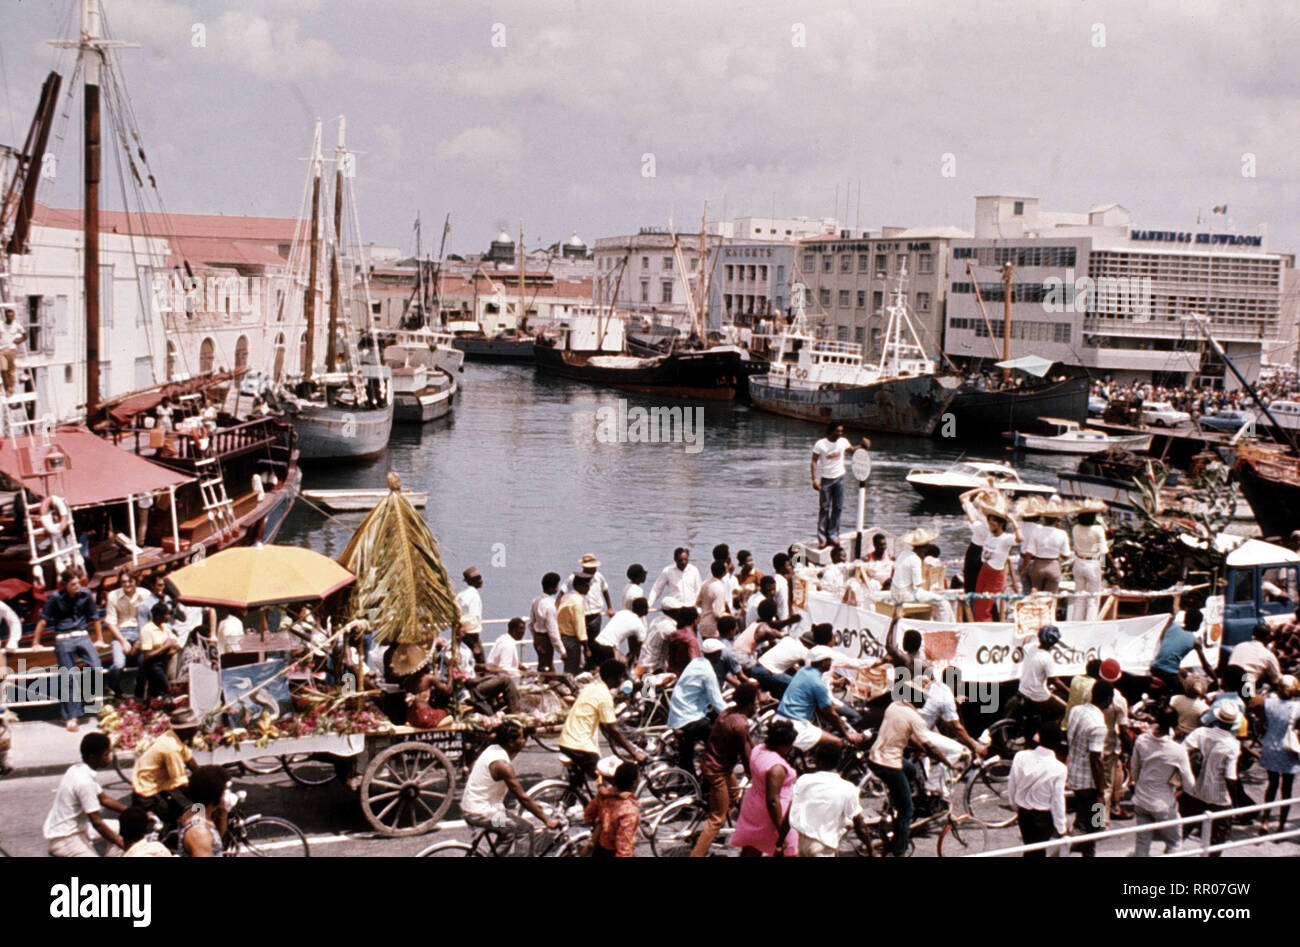 Barbados - Hafen / Überschrift: Barbados Foto de stock